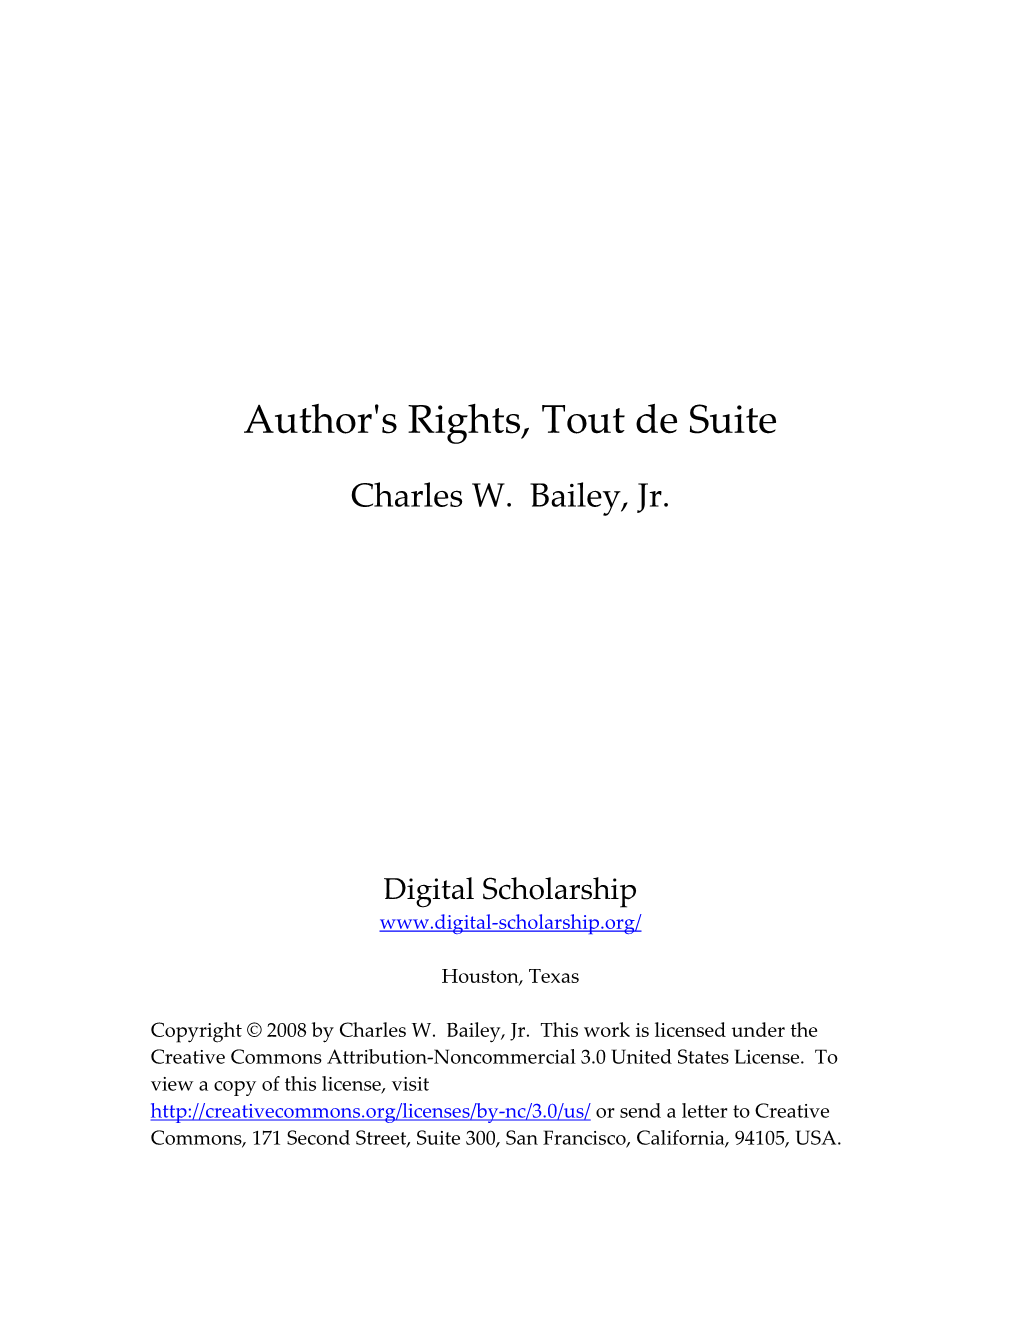 Author's Rights, Tout De Suite